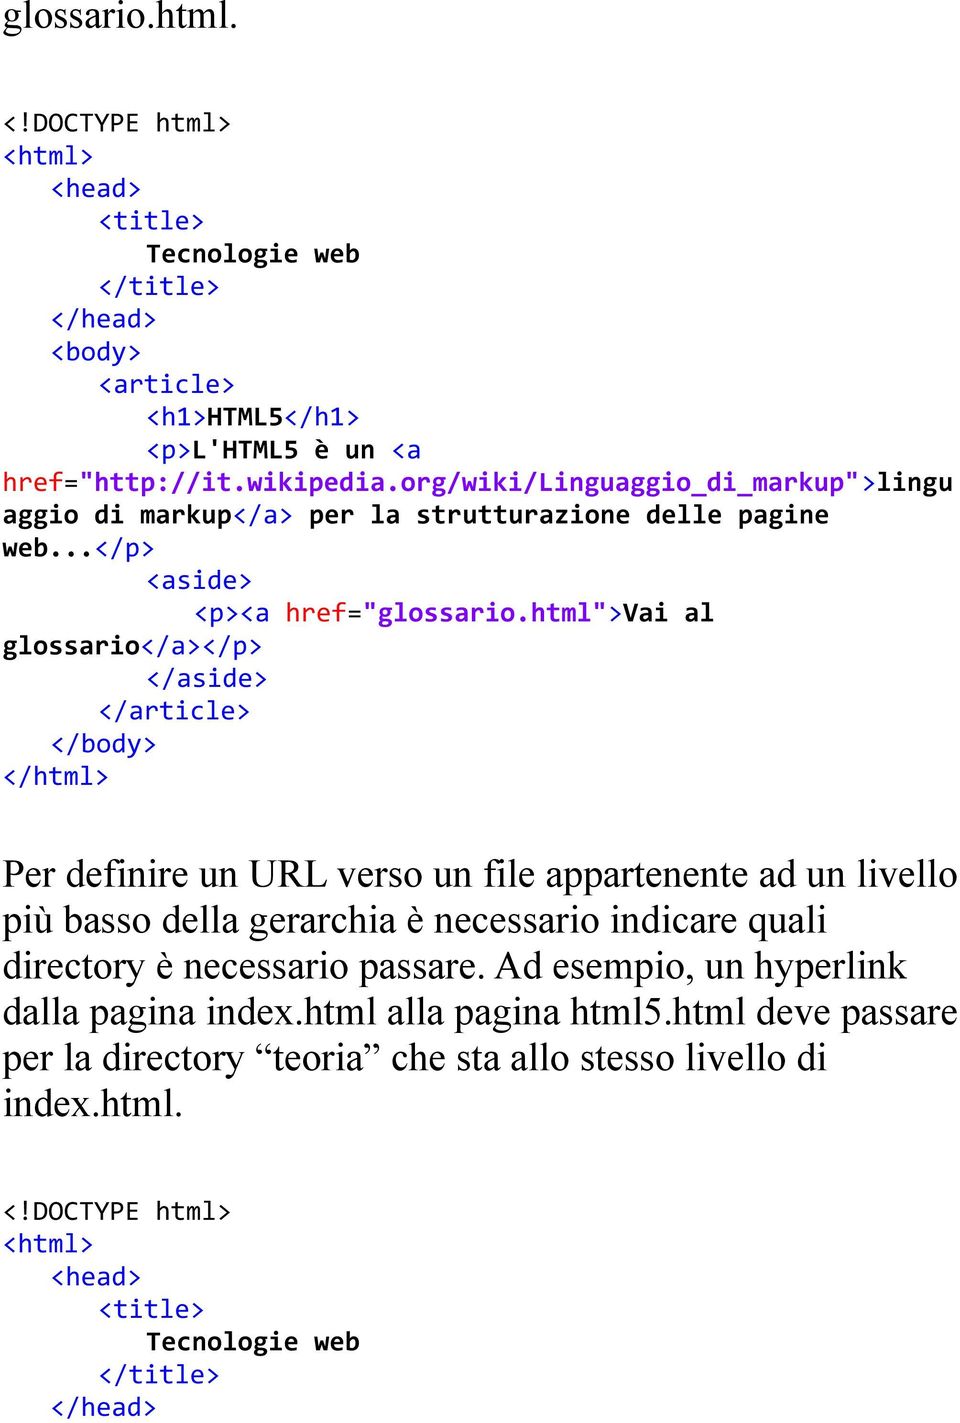 html">vai al glossario</a></p> </aside> Per definire un URL verso un file appartenente ad un livello più basso della gerarchia è